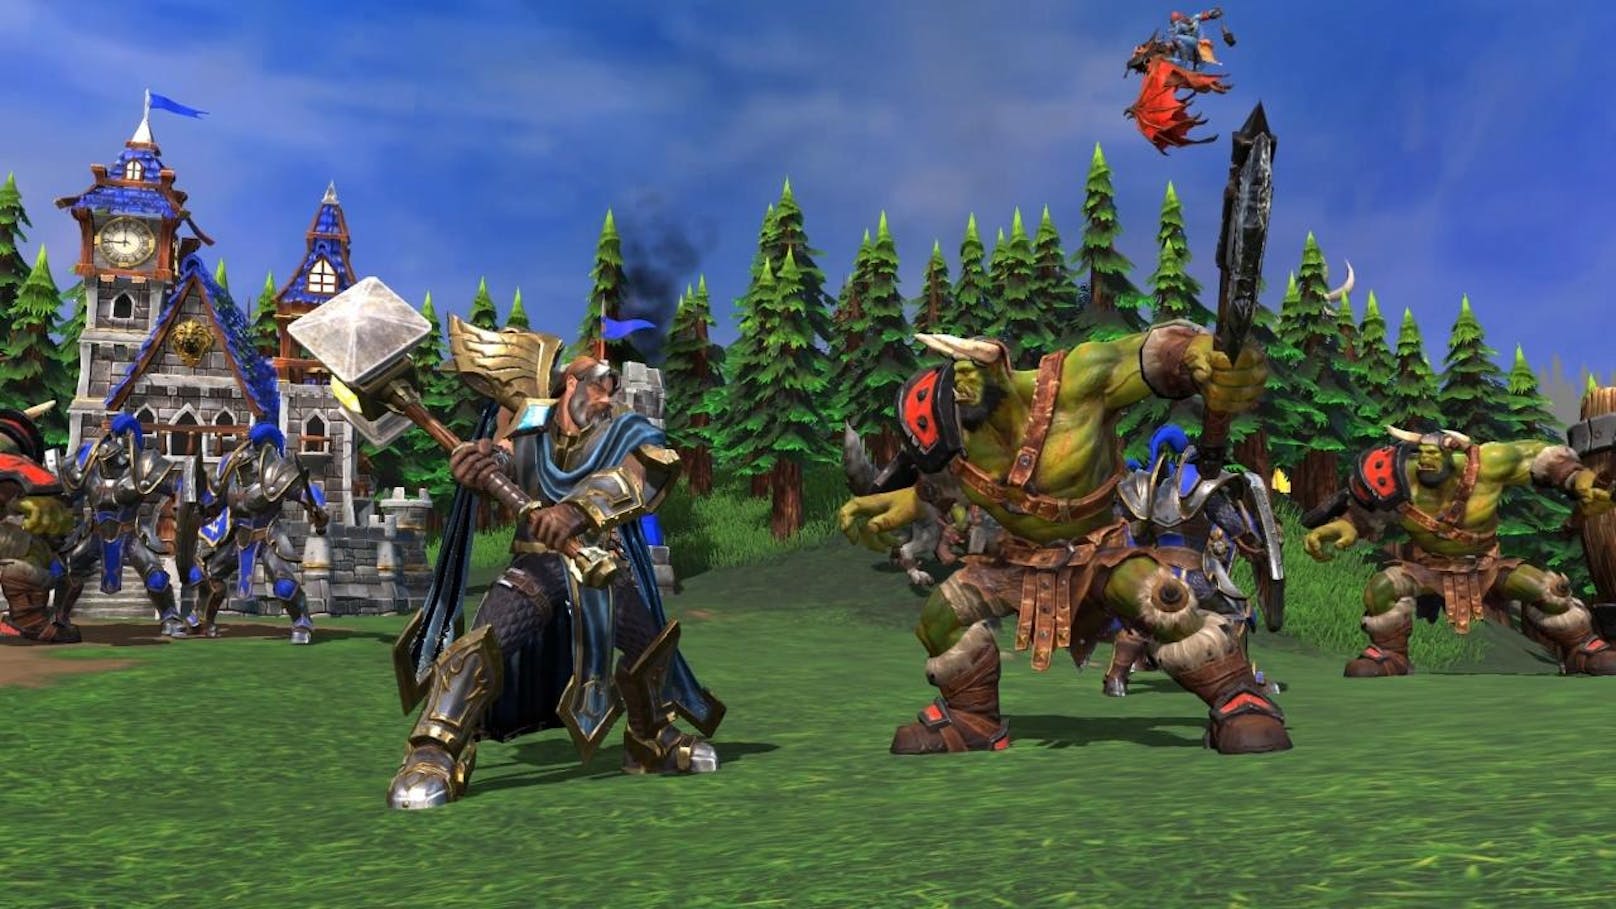 Blizzard Entertainment bringt einen weiteren Klassiker zurück. 2019 erscheint neben World of Warcraft Classic auch eine Neuauflage des Echtzeitstrategiespiels Warcraft 3 mit dem Zusatz "Reforged".